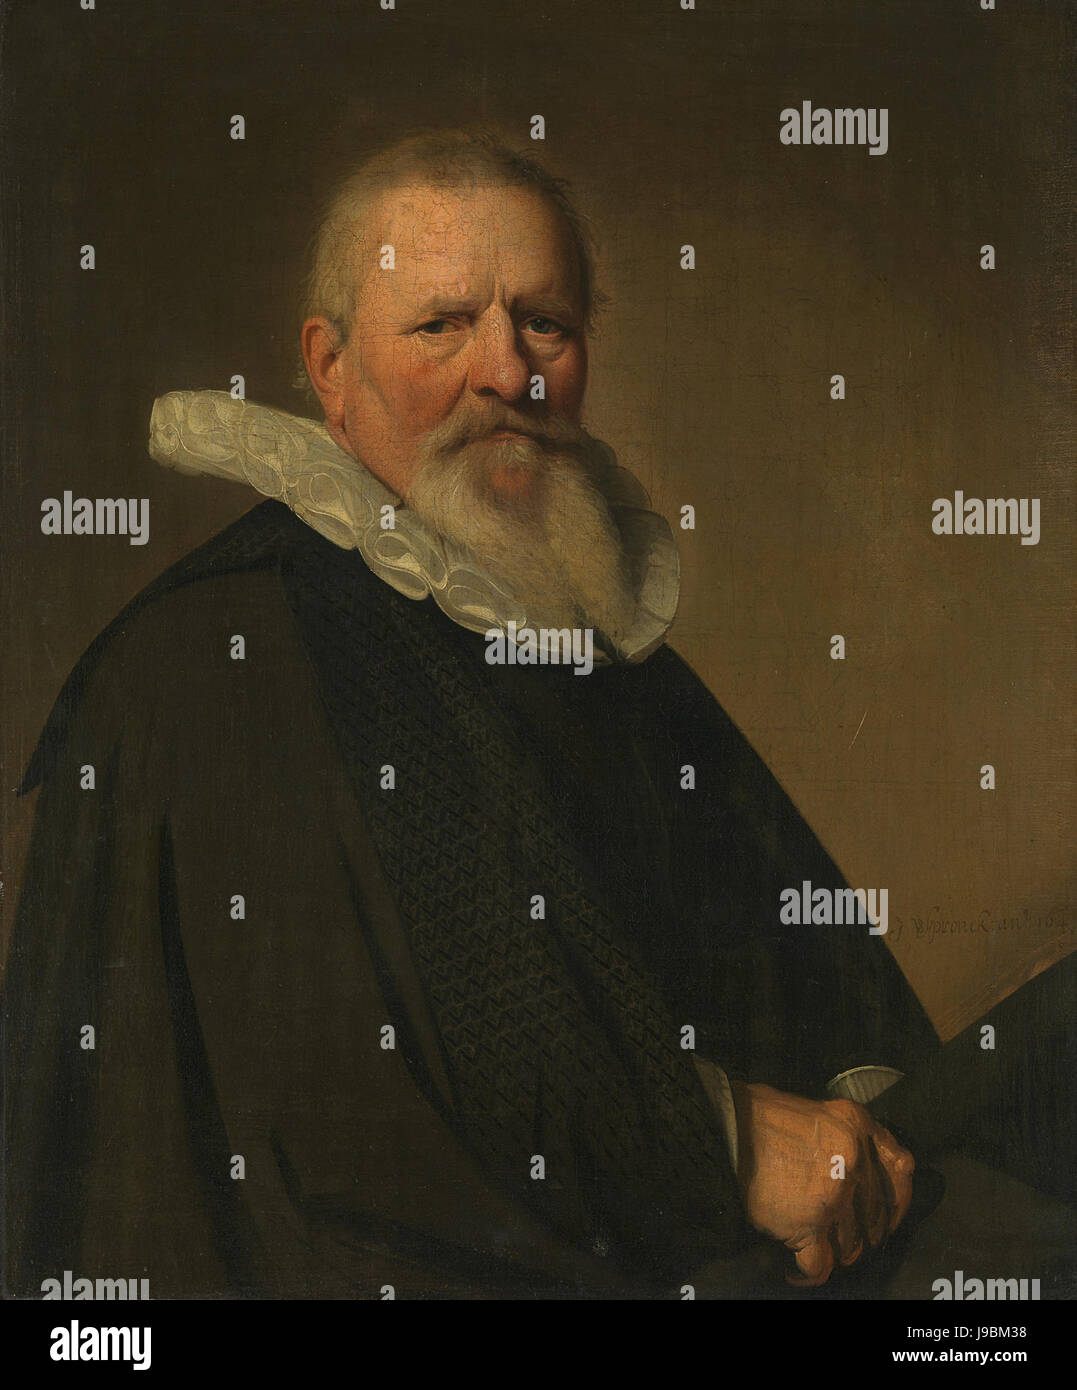 Pieter Jacobsz Schout (1570 1645). Burgemeester van Haarlem Rijksmuseum SK A 380 Stock Photo